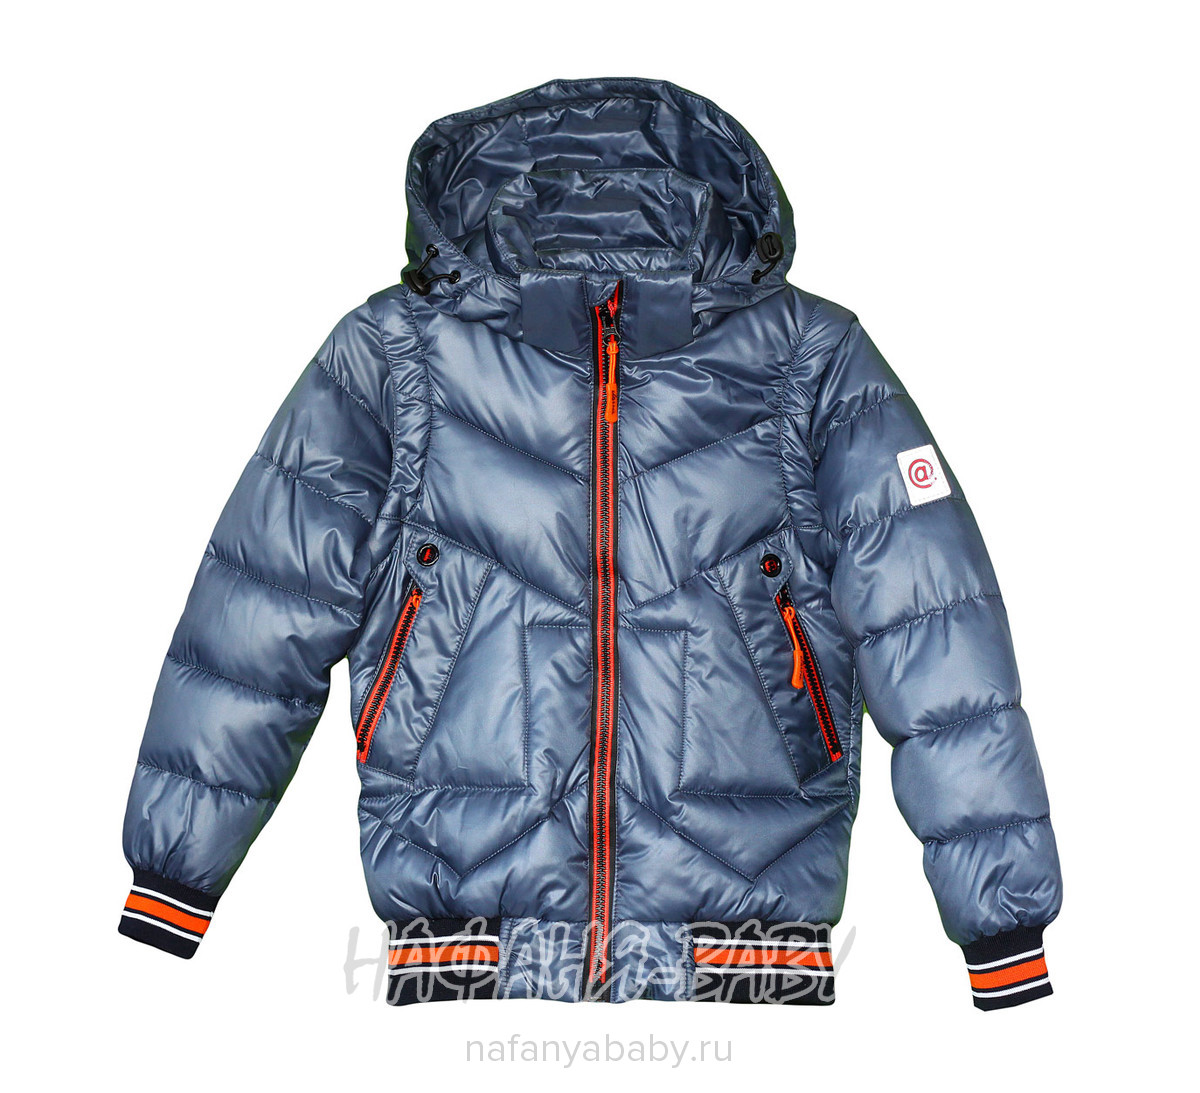 Детская демисезонная куртка AET арт: 7361, 5-9 лет, 1-4 года, оптом Китай (Пекин)